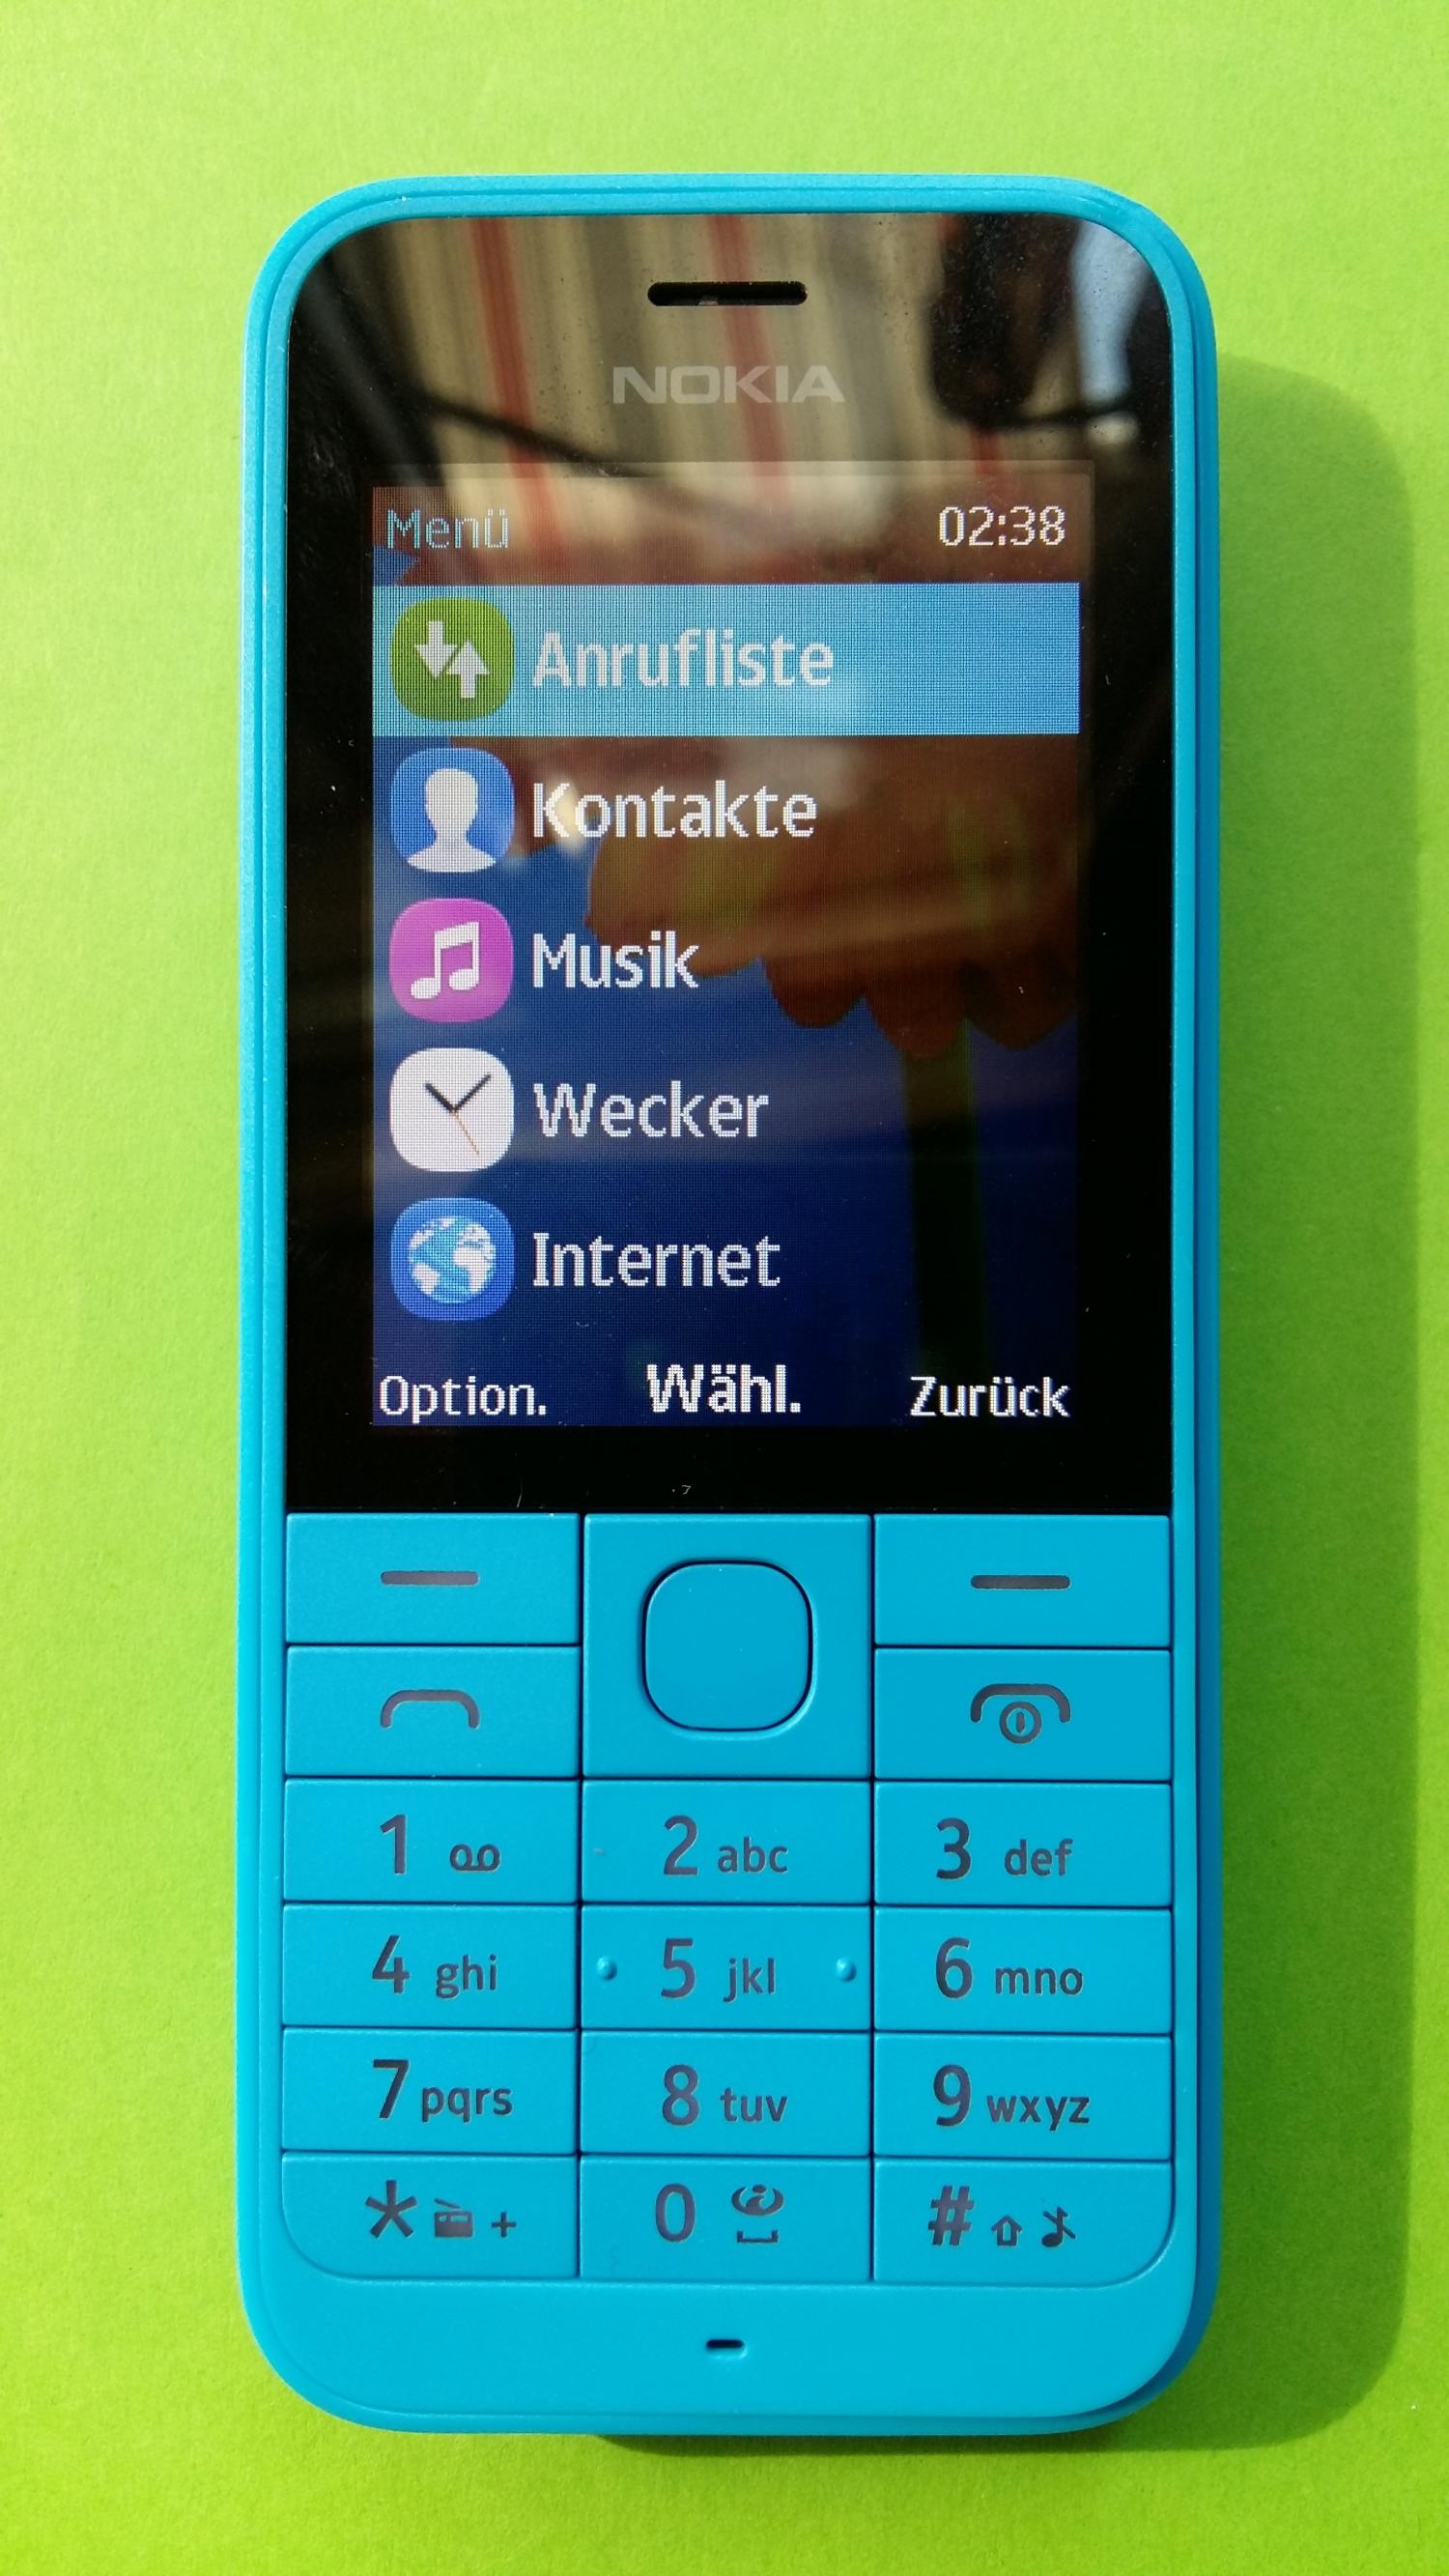 image-7300891-Nokia 220 (2)1.jpg